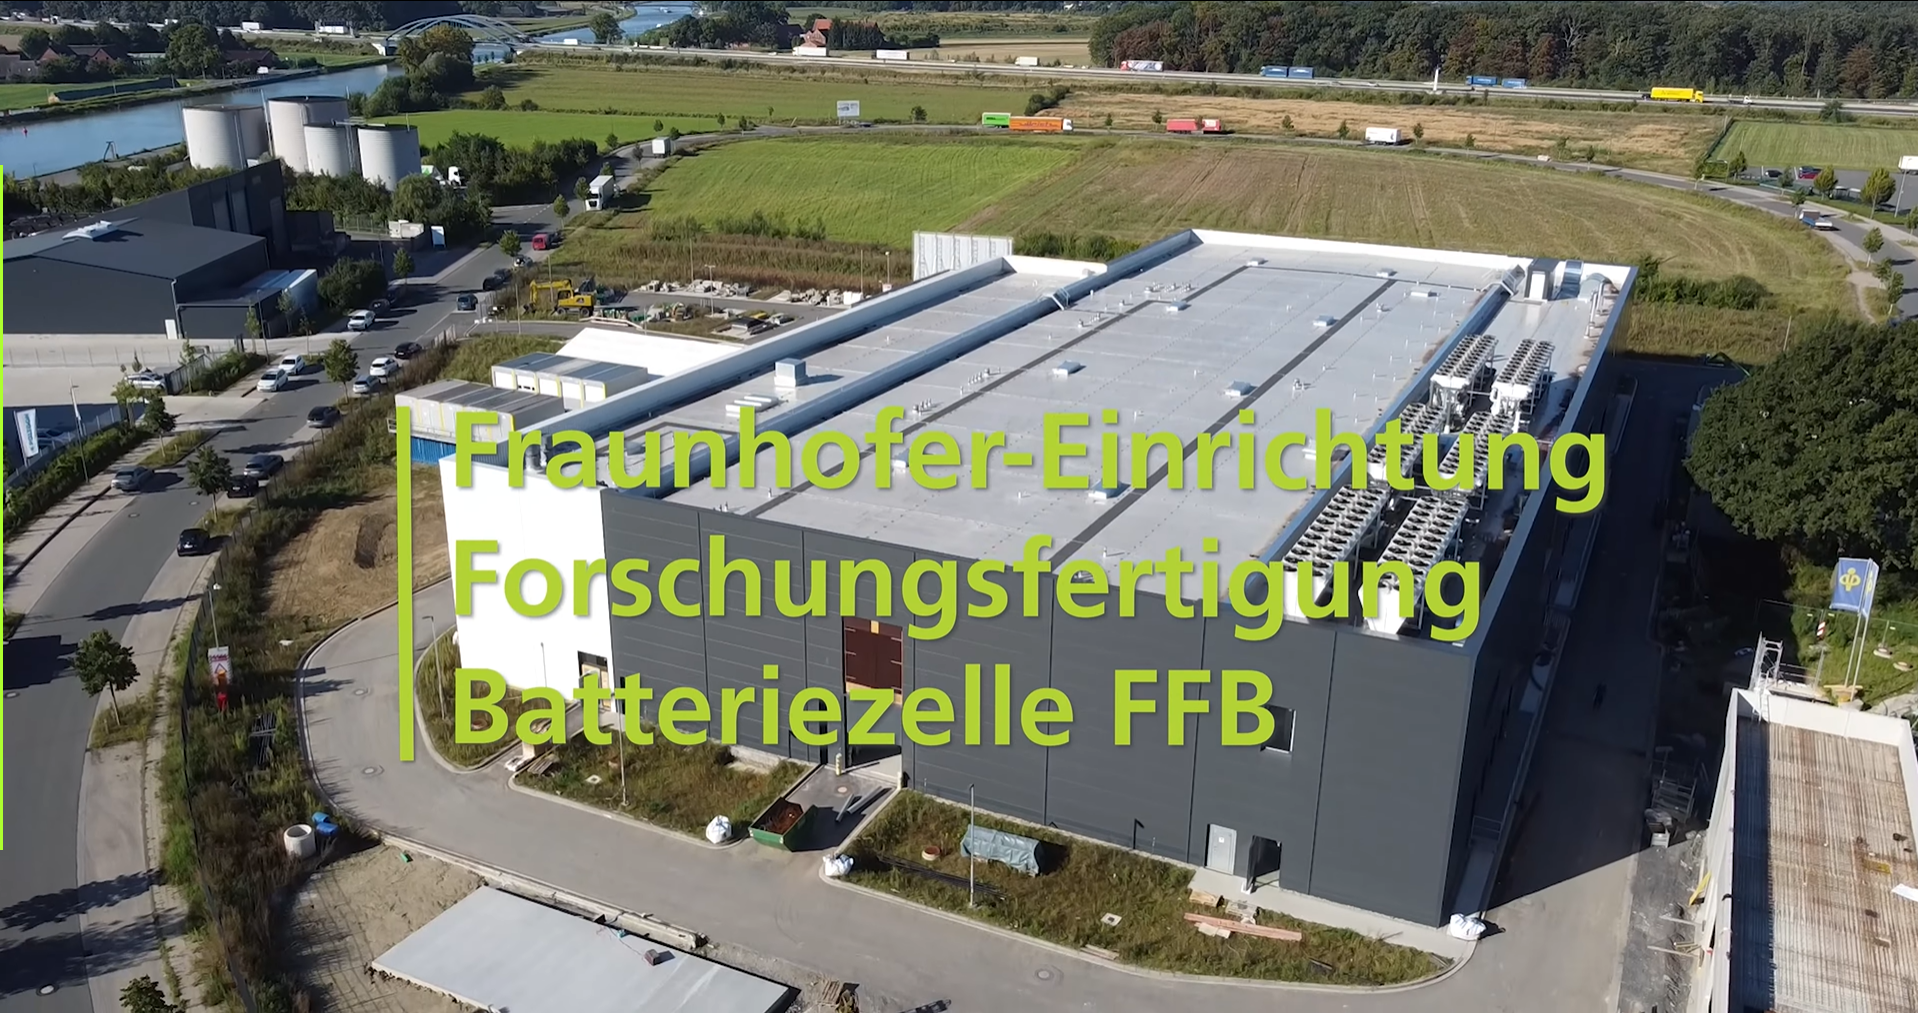 Screenshot aus dem Video der Fraunhofer FFB: Ziele, Standorte und Batterieforschung in Münster